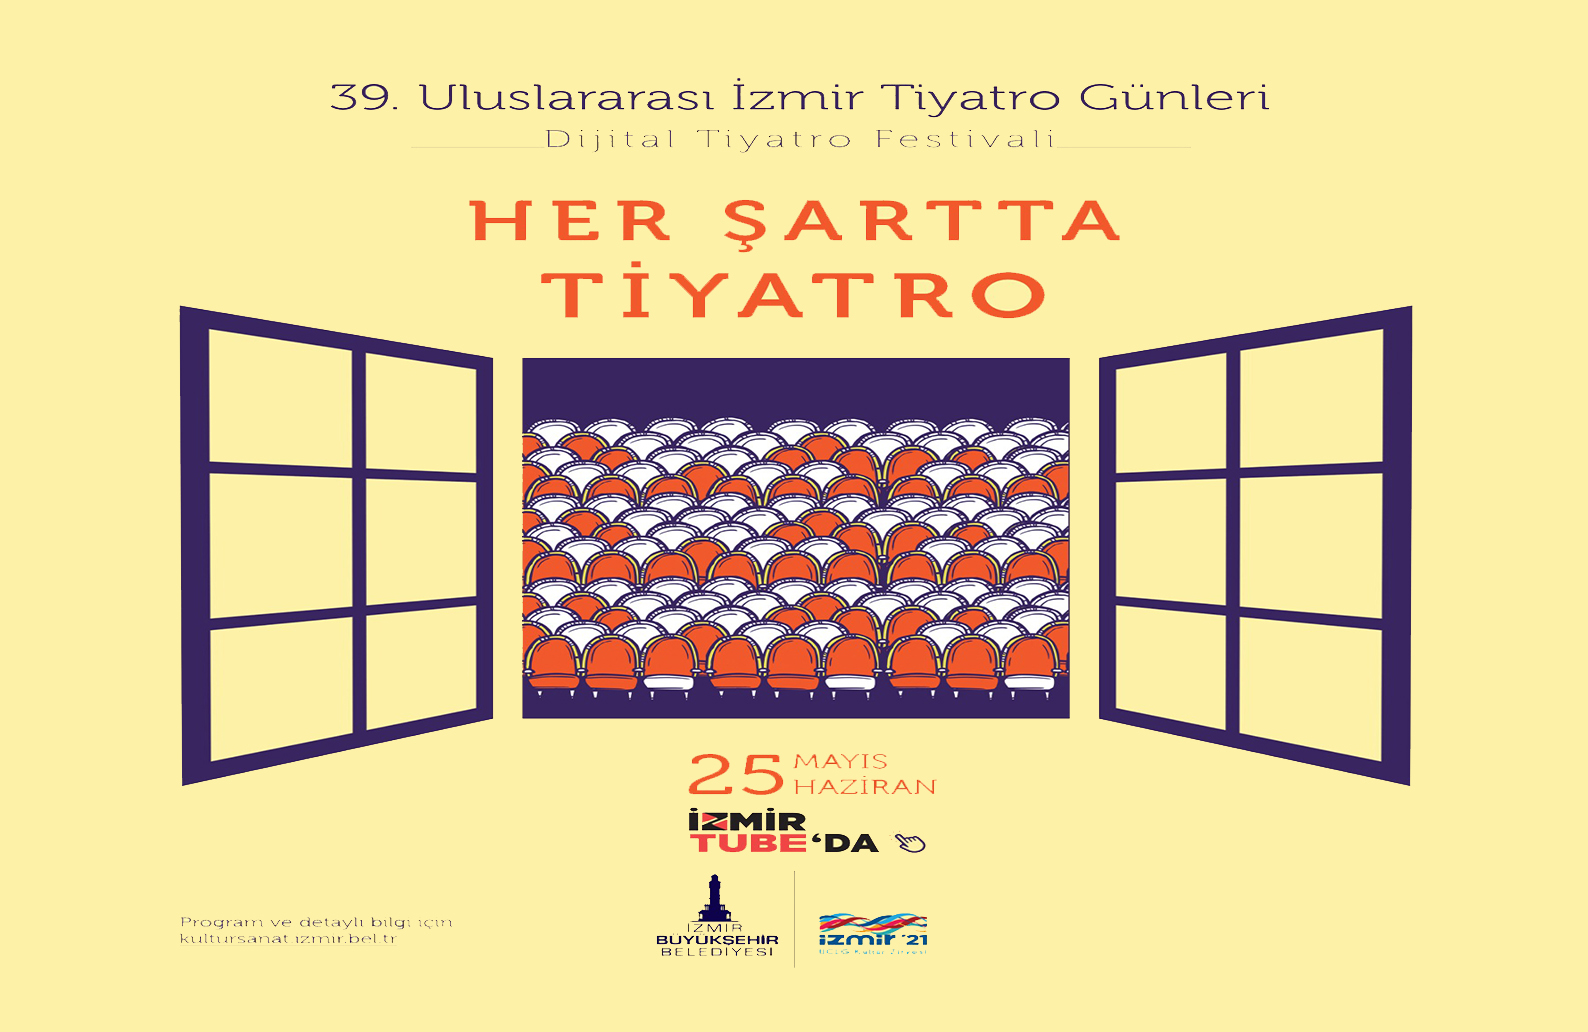  39. Uluslararası İzmir Tiyatro Günleri Başlıyor